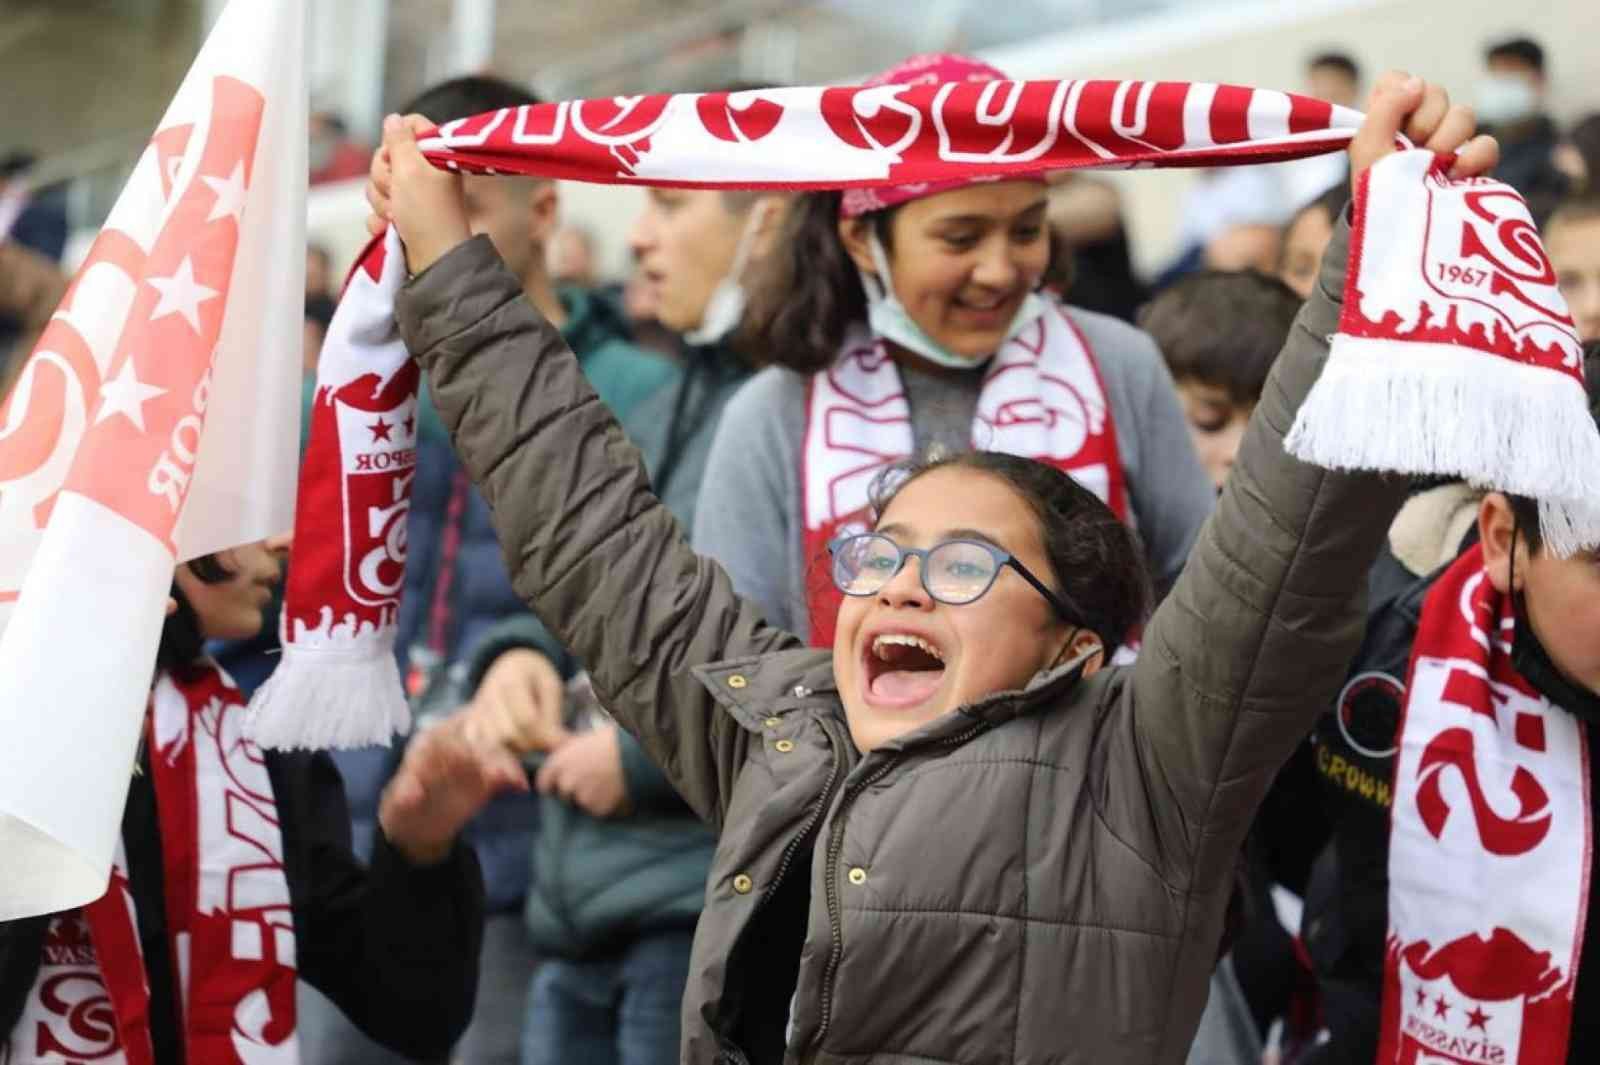 Minik Yiğidolar, Sivasspor’a destek olmaya devam ediyor #sivas